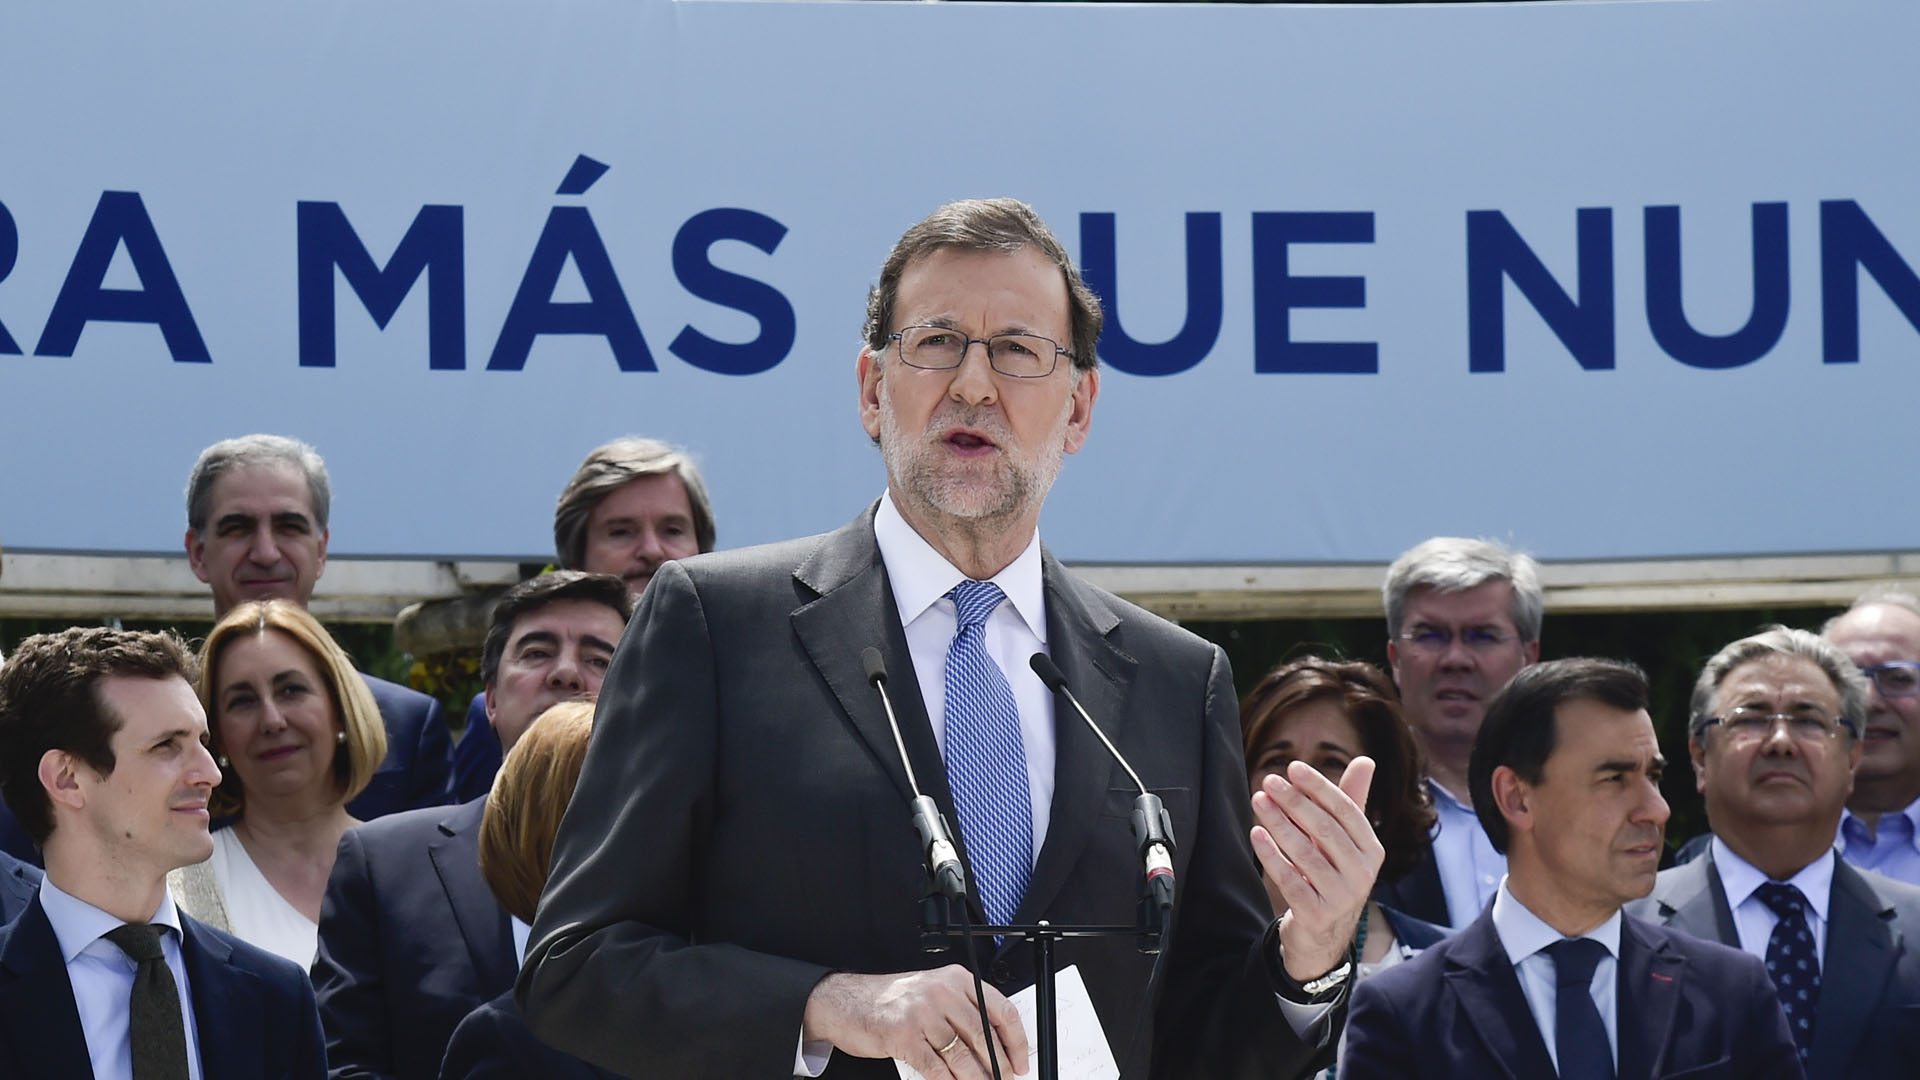 Pedro Sánchez, candidato del PSOE afirmó que quiere “un Gobierno de cambio”